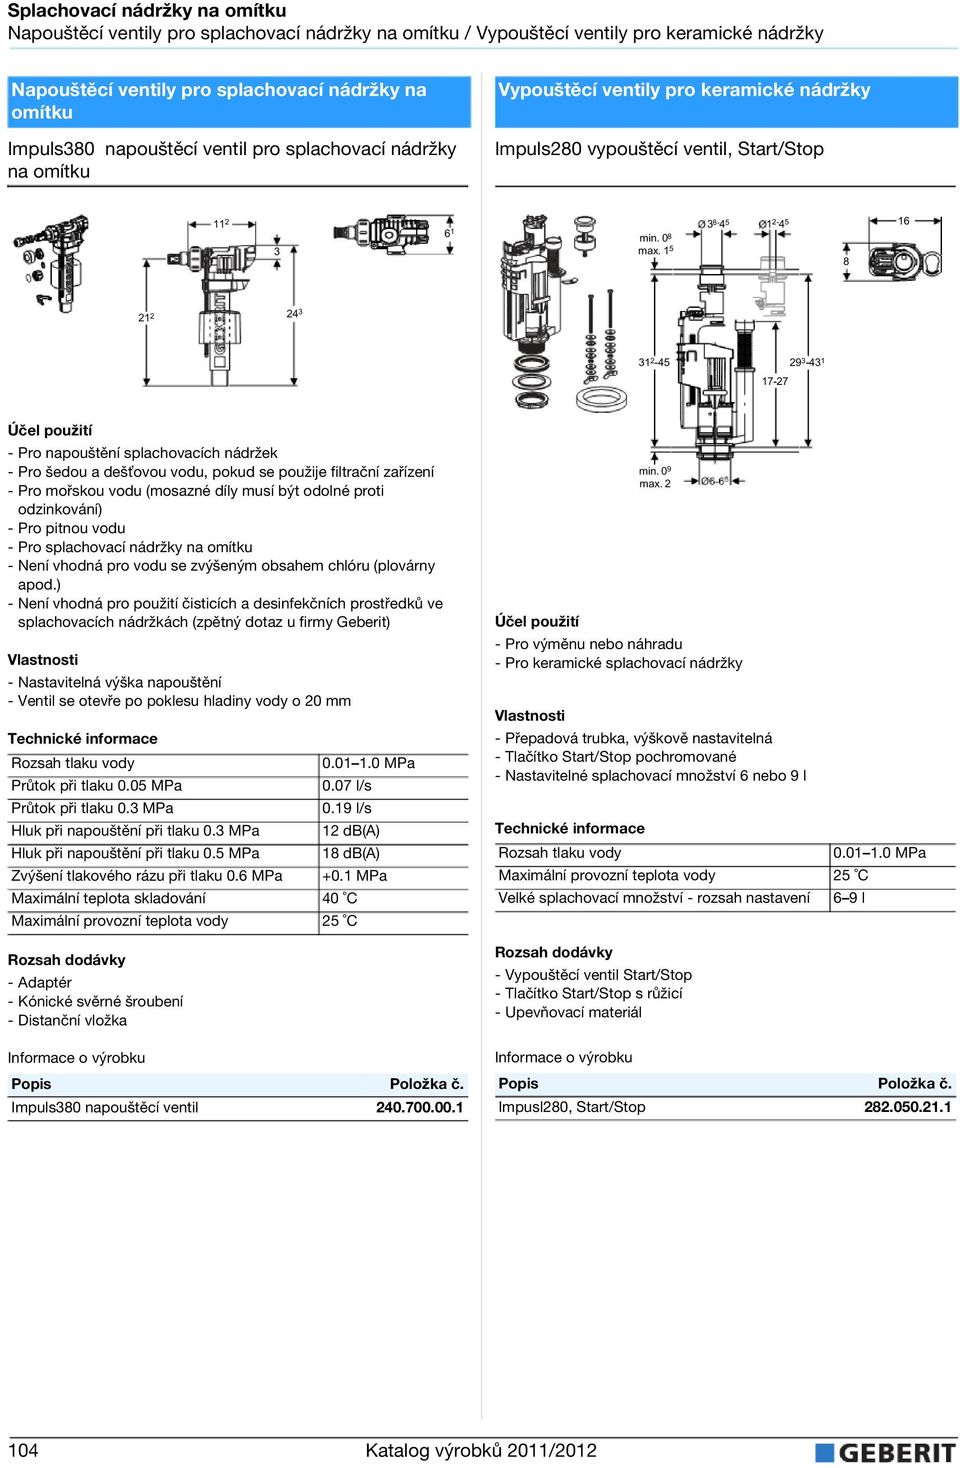 keramické náržky Impuls28 vypouštěcí ventil, Start/Stop 11 2 6 1 3 min. 8 max.